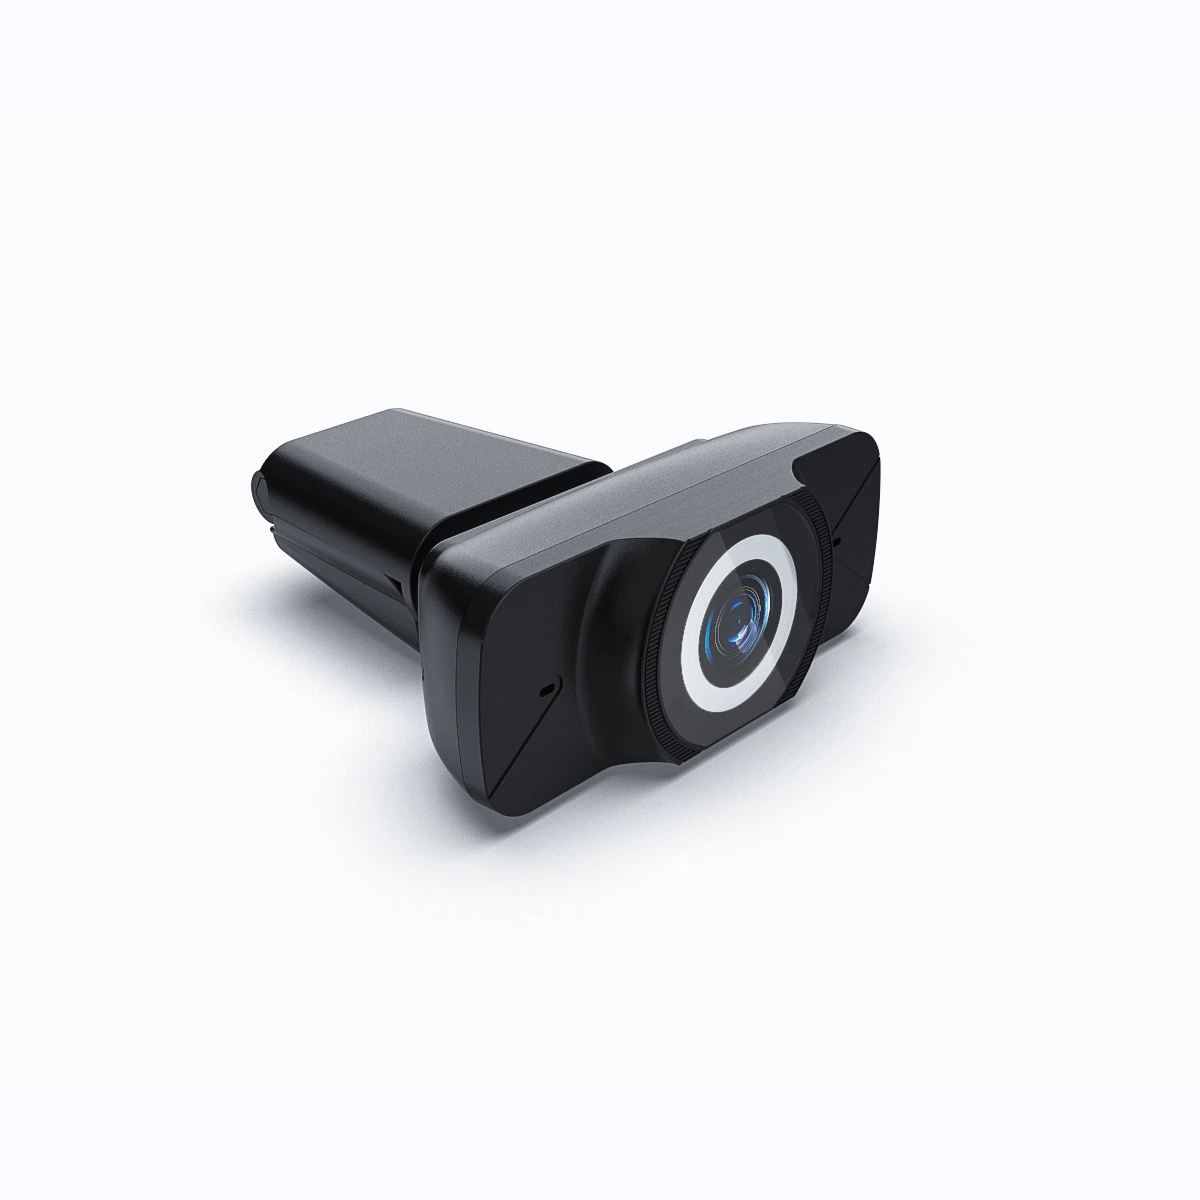 Commerce de gros Fullhd 1080p 30 fps portable USB Webcam Vidéo conférence Wide-Angle Lentille de caméra PC